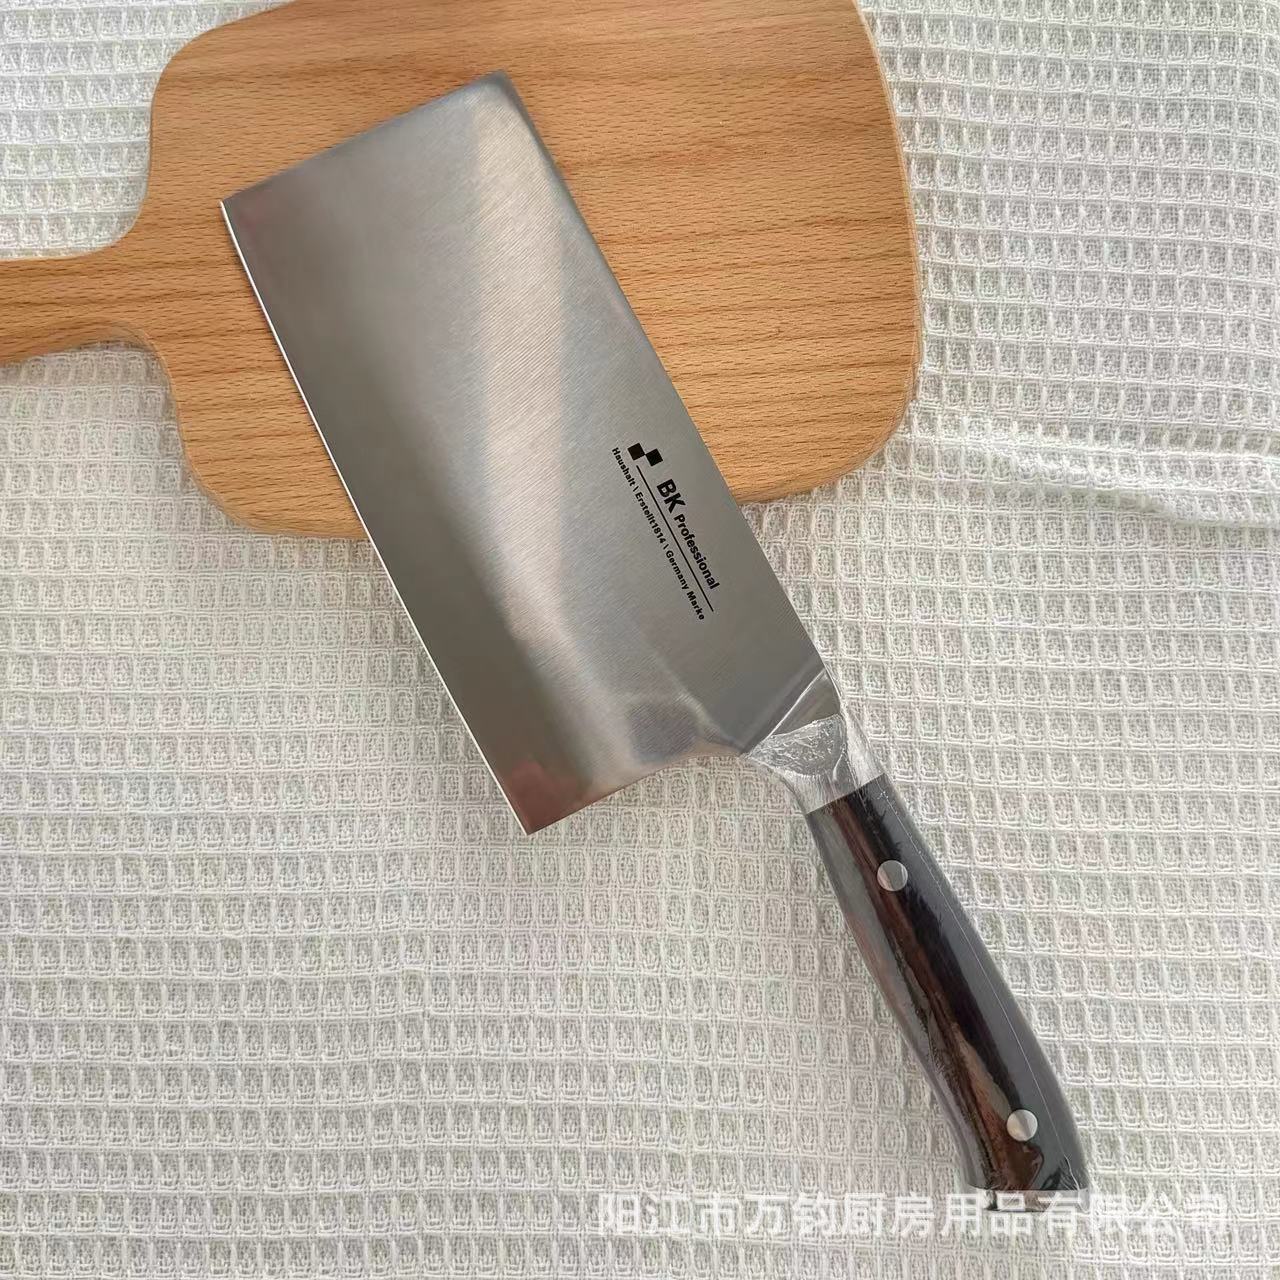 阳江新款家用黑檀手柄切片刀厨房刀具切菜切肉刀专用超快锋利菜刀